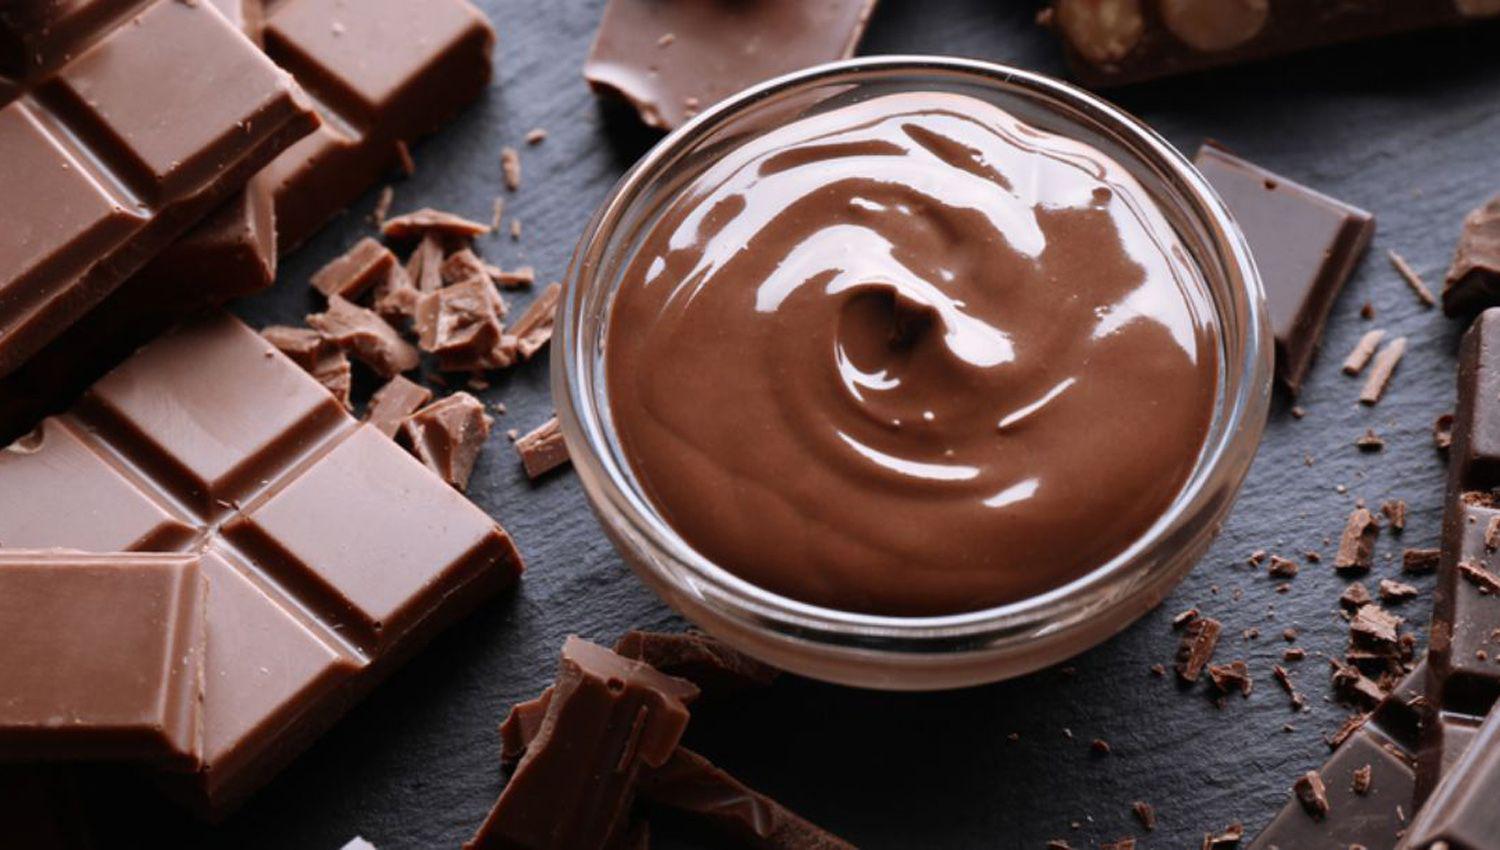 Este domingo es el diacutea del chocolate- las 6 mejores tabletas y postres gourmet